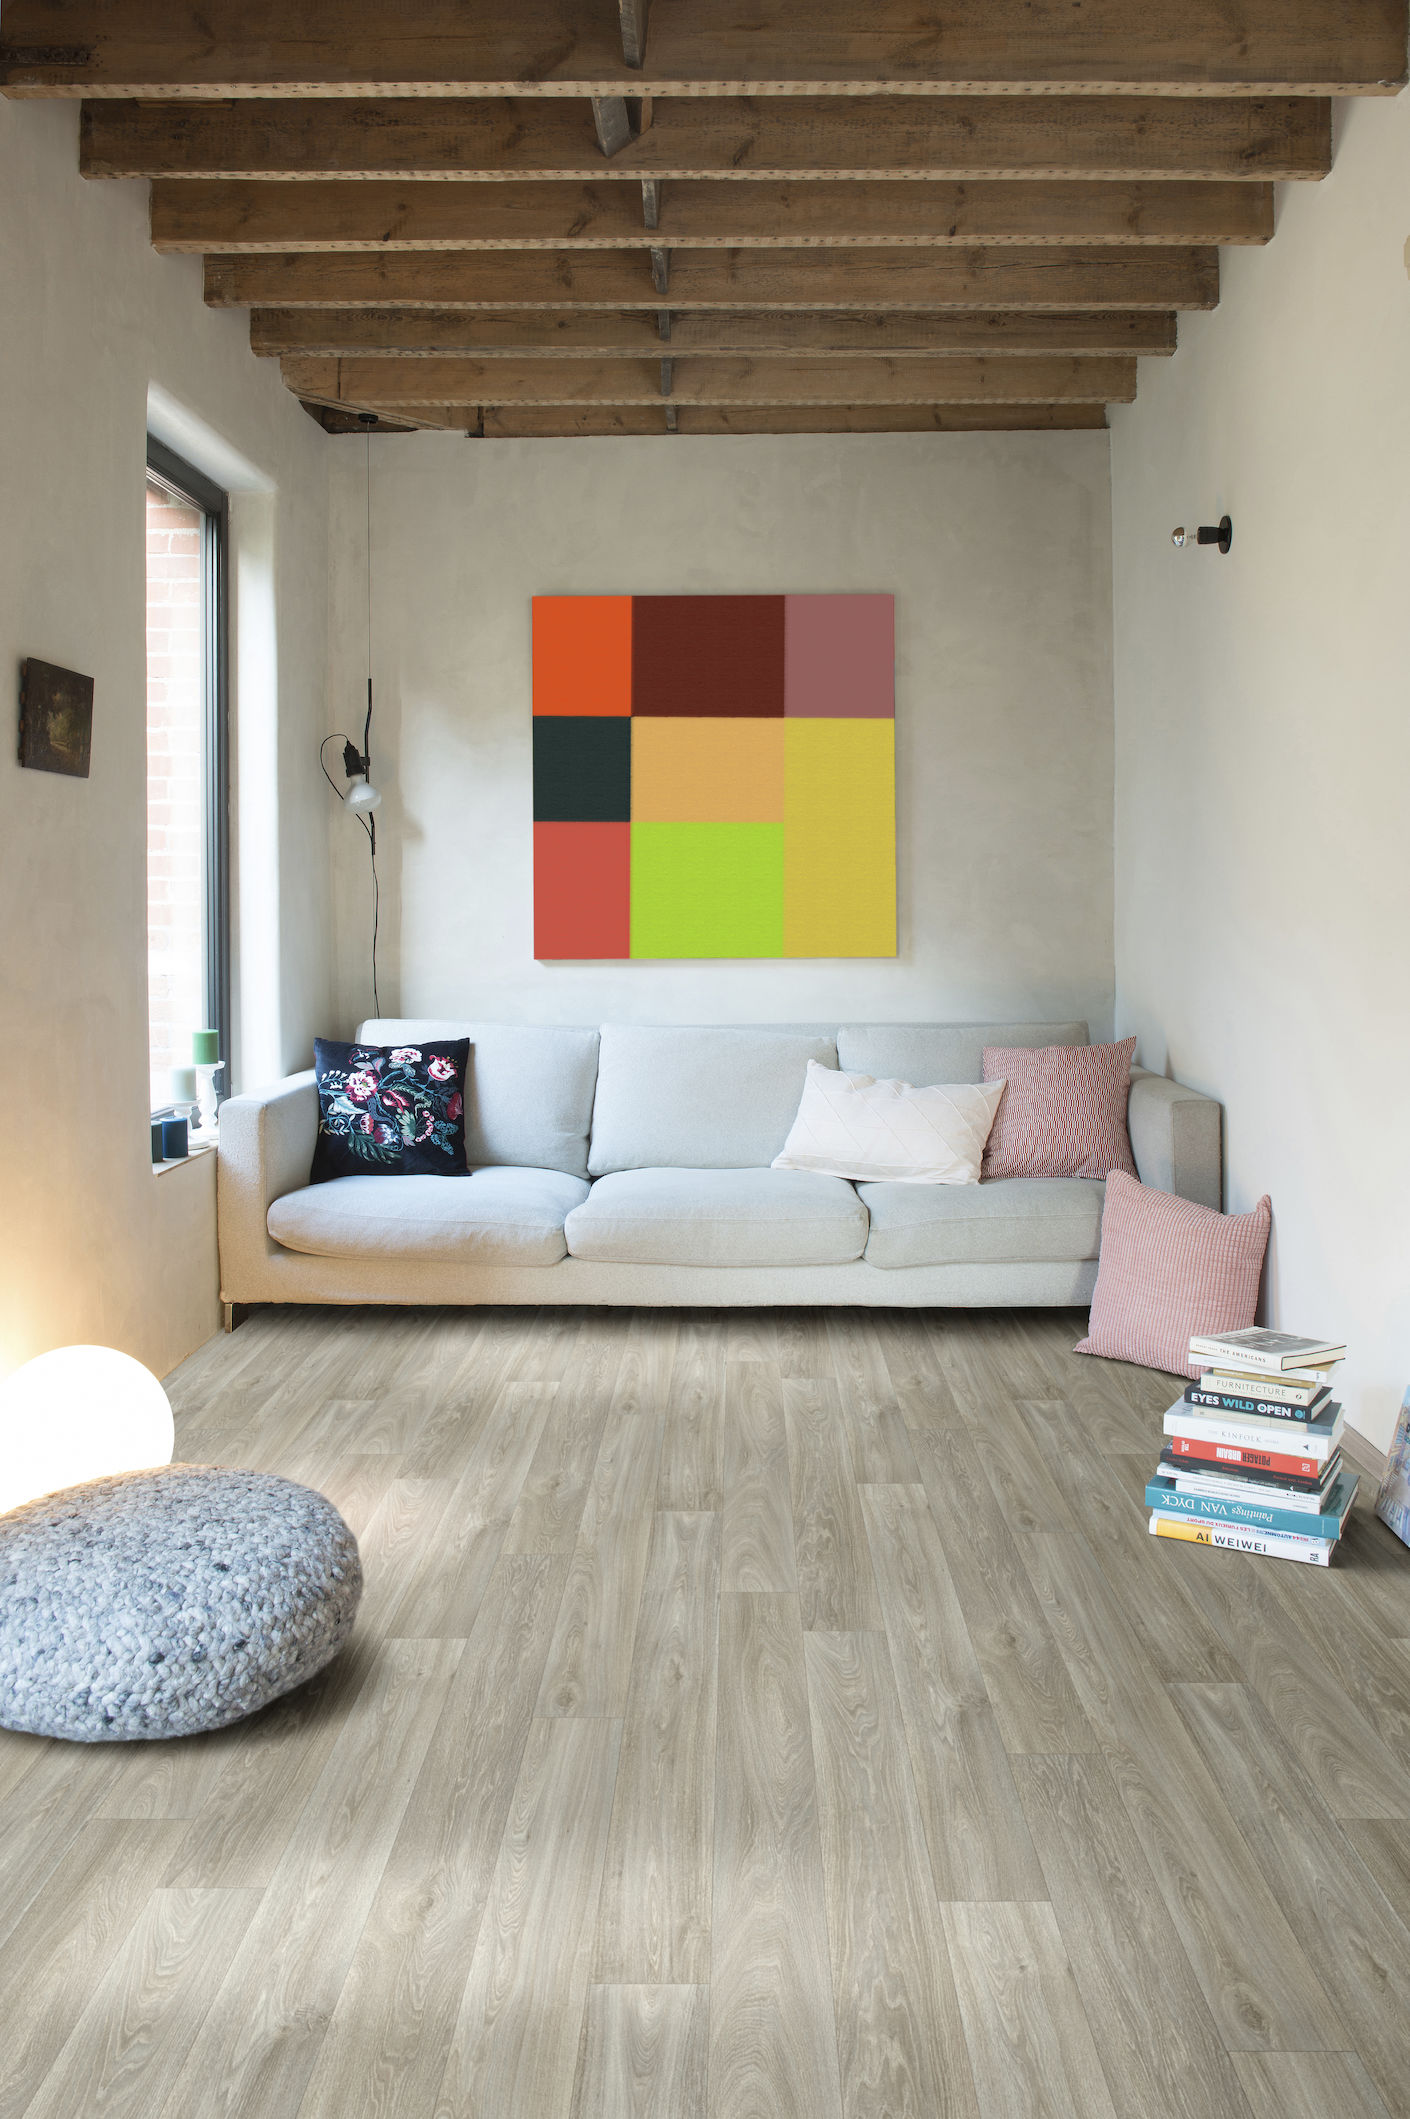 PVC flooring in light-coloured wooden planks